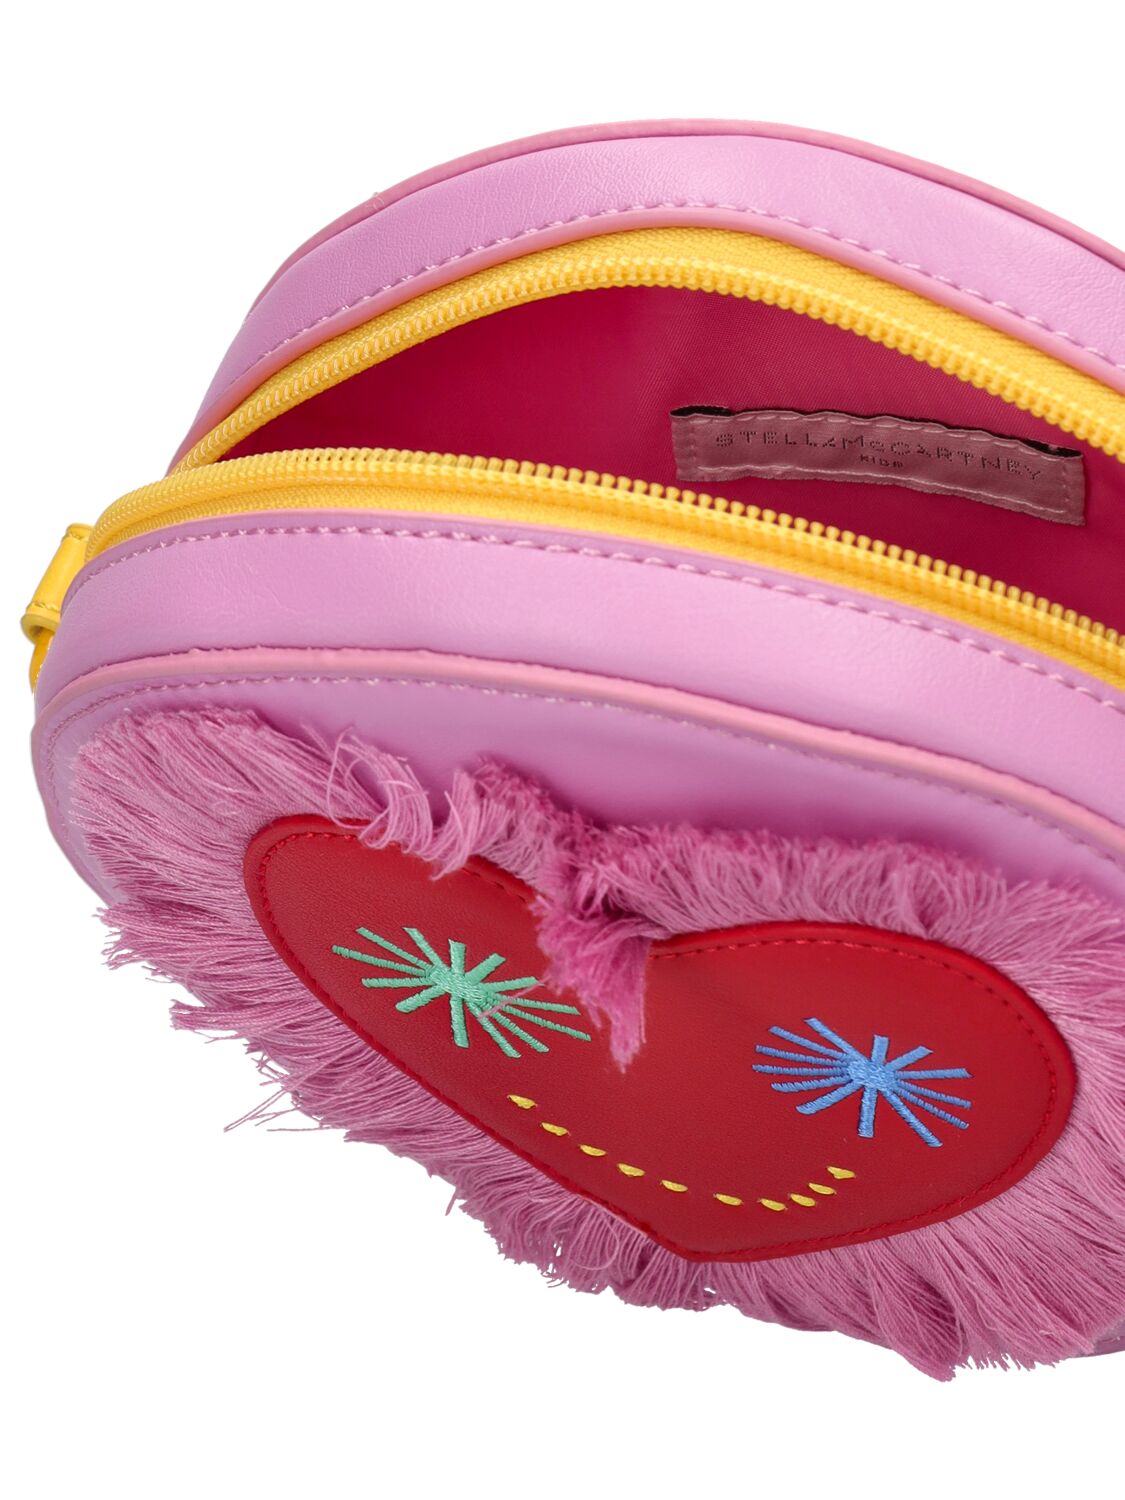 Shop Stella Mccartney Shoulder Bag In Pink